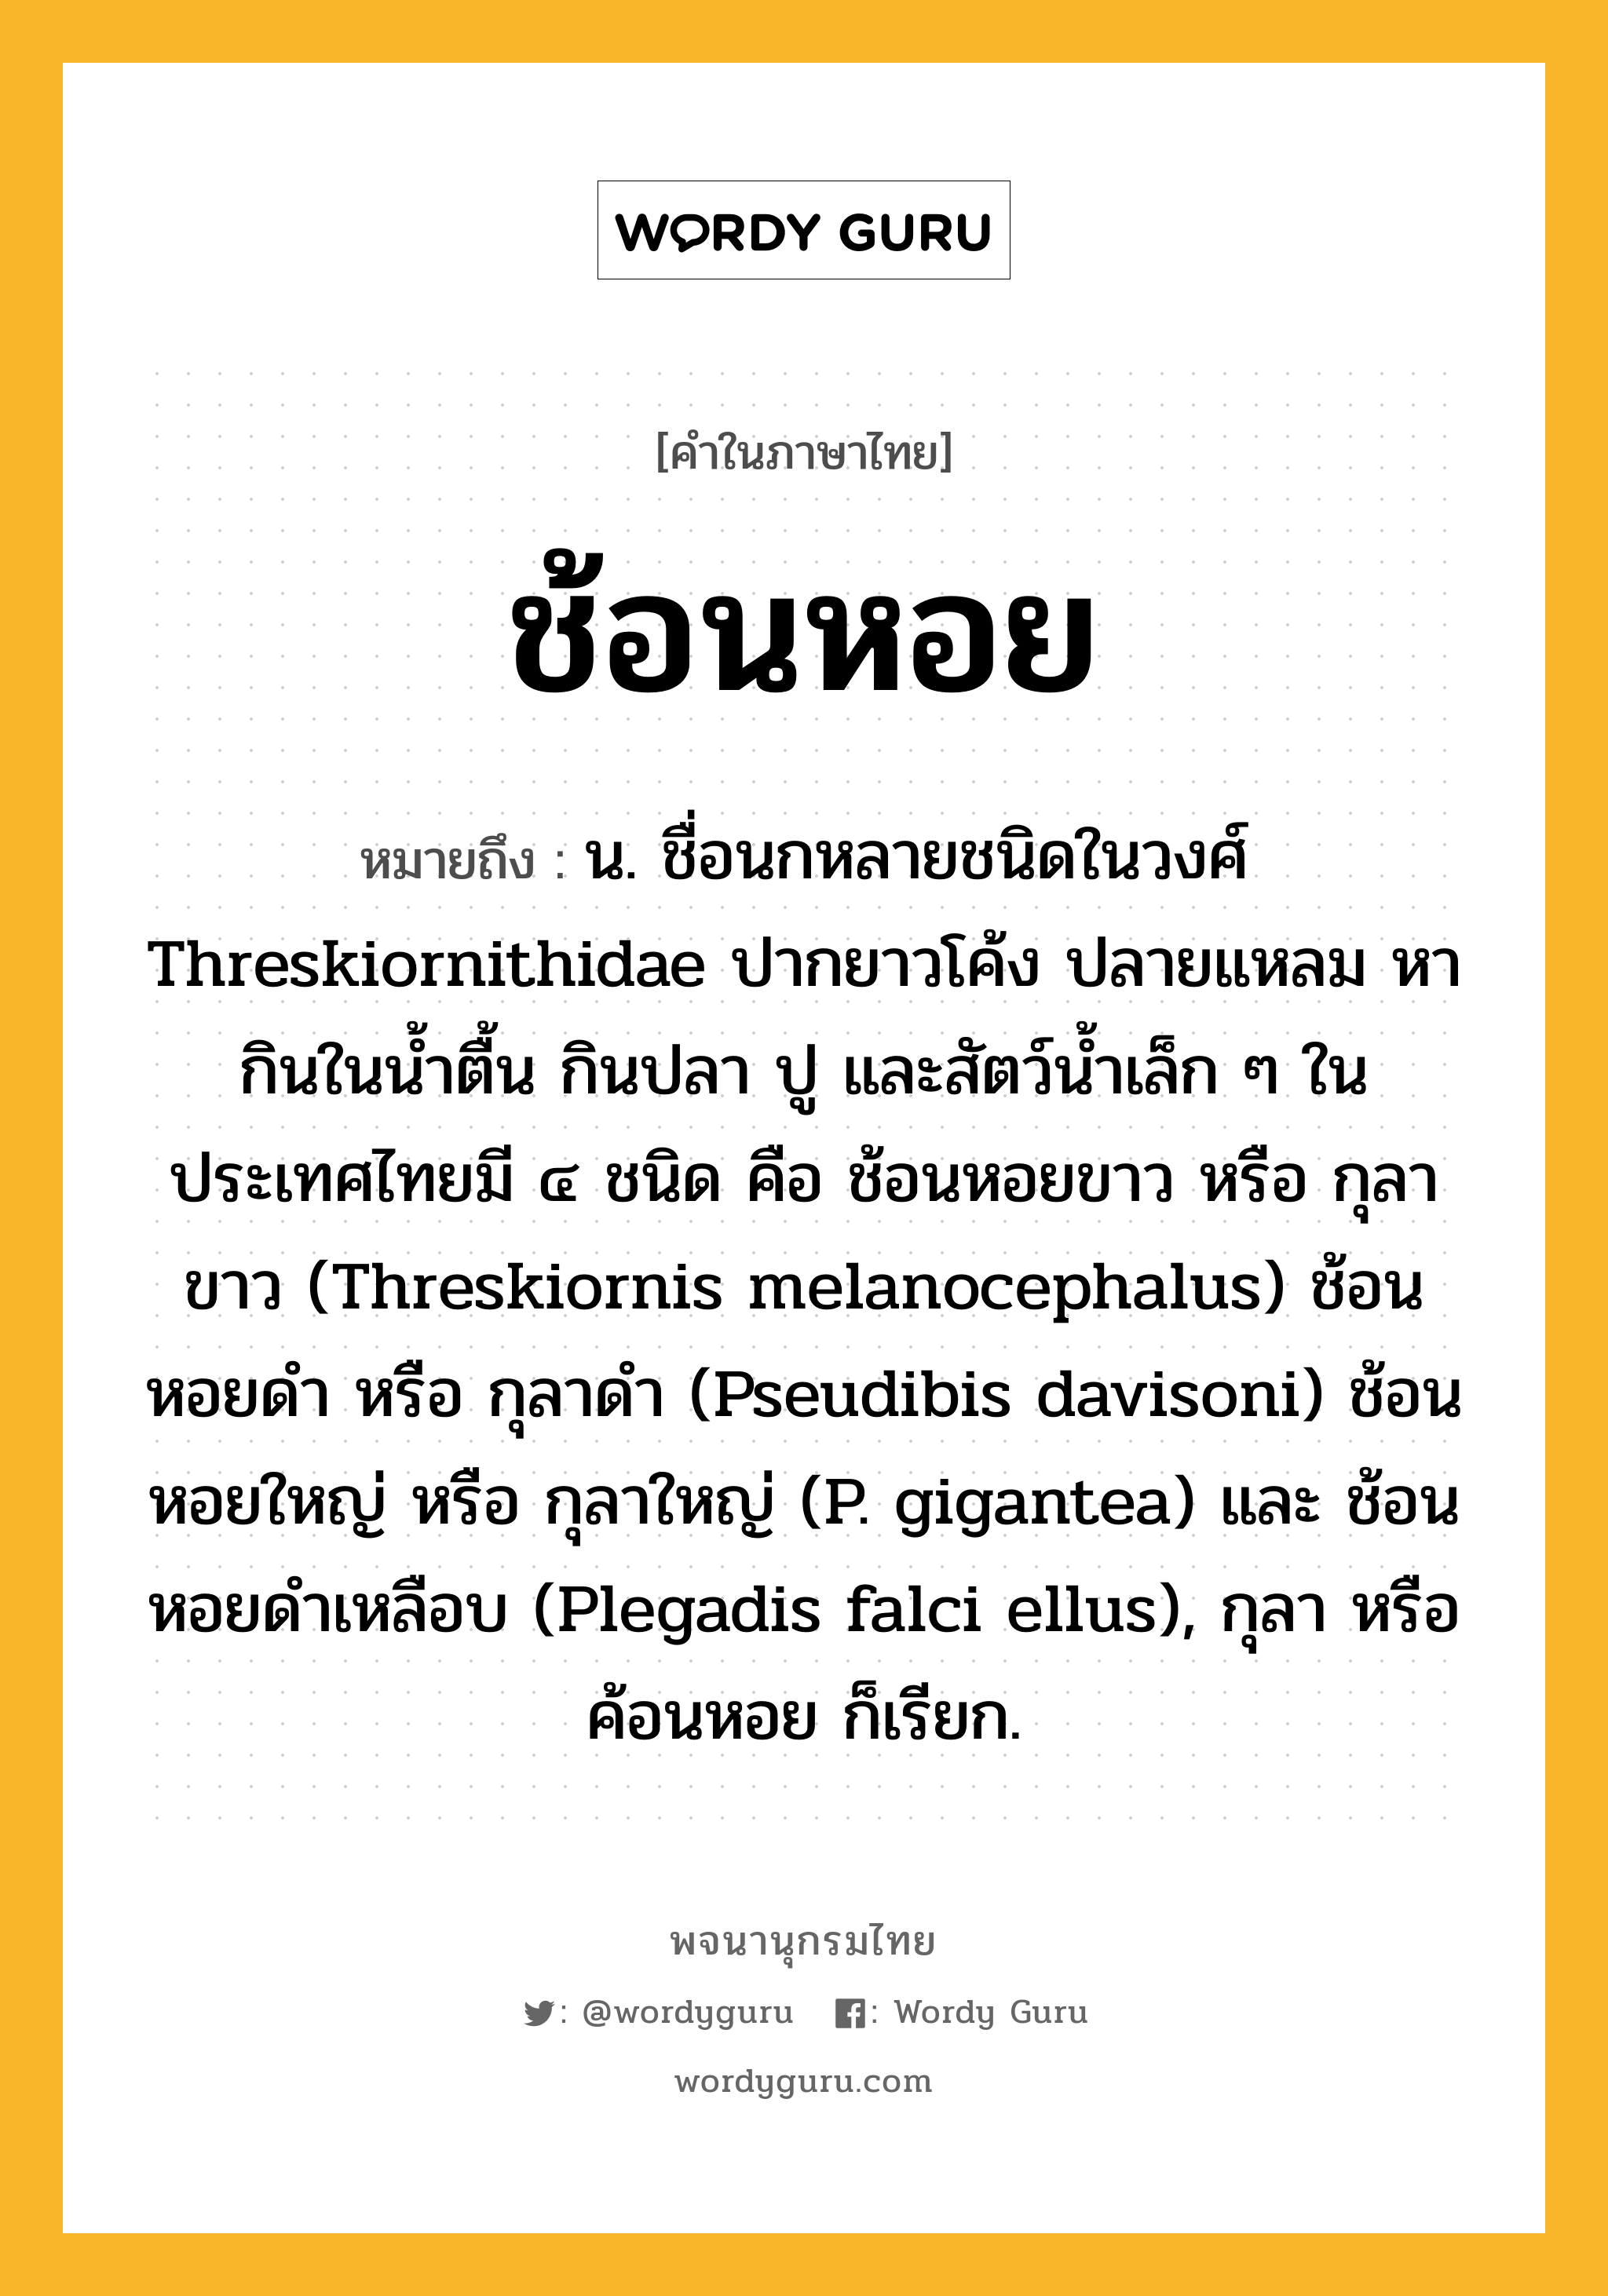 ช้อนหอย ความหมาย หมายถึงอะไร?, คำในภาษาไทย ช้อนหอย หมายถึง น. ชื่อนกหลายชนิดในวงศ์ Threskiornithidae ปากยาวโค้ง ปลายแหลม หากินในนํ้าตื้น กินปลา ปู และสัตว์นํ้าเล็ก ๆ ในประเทศไทยมี ๔ ชนิด คือ ช้อนหอยขาว หรือ กุลาขาว (Threskiornis melanocephalus) ช้อนหอยดํา หรือ กุลาดํา (Pseudibis davisoni) ช้อนหอยใหญ่ หรือ กุลาใหญ่ (P. gigantea) และ ช้อนหอยดำเหลือบ (Plegadis falci ellus), กุลา หรือ ค้อนหอย ก็เรียก.